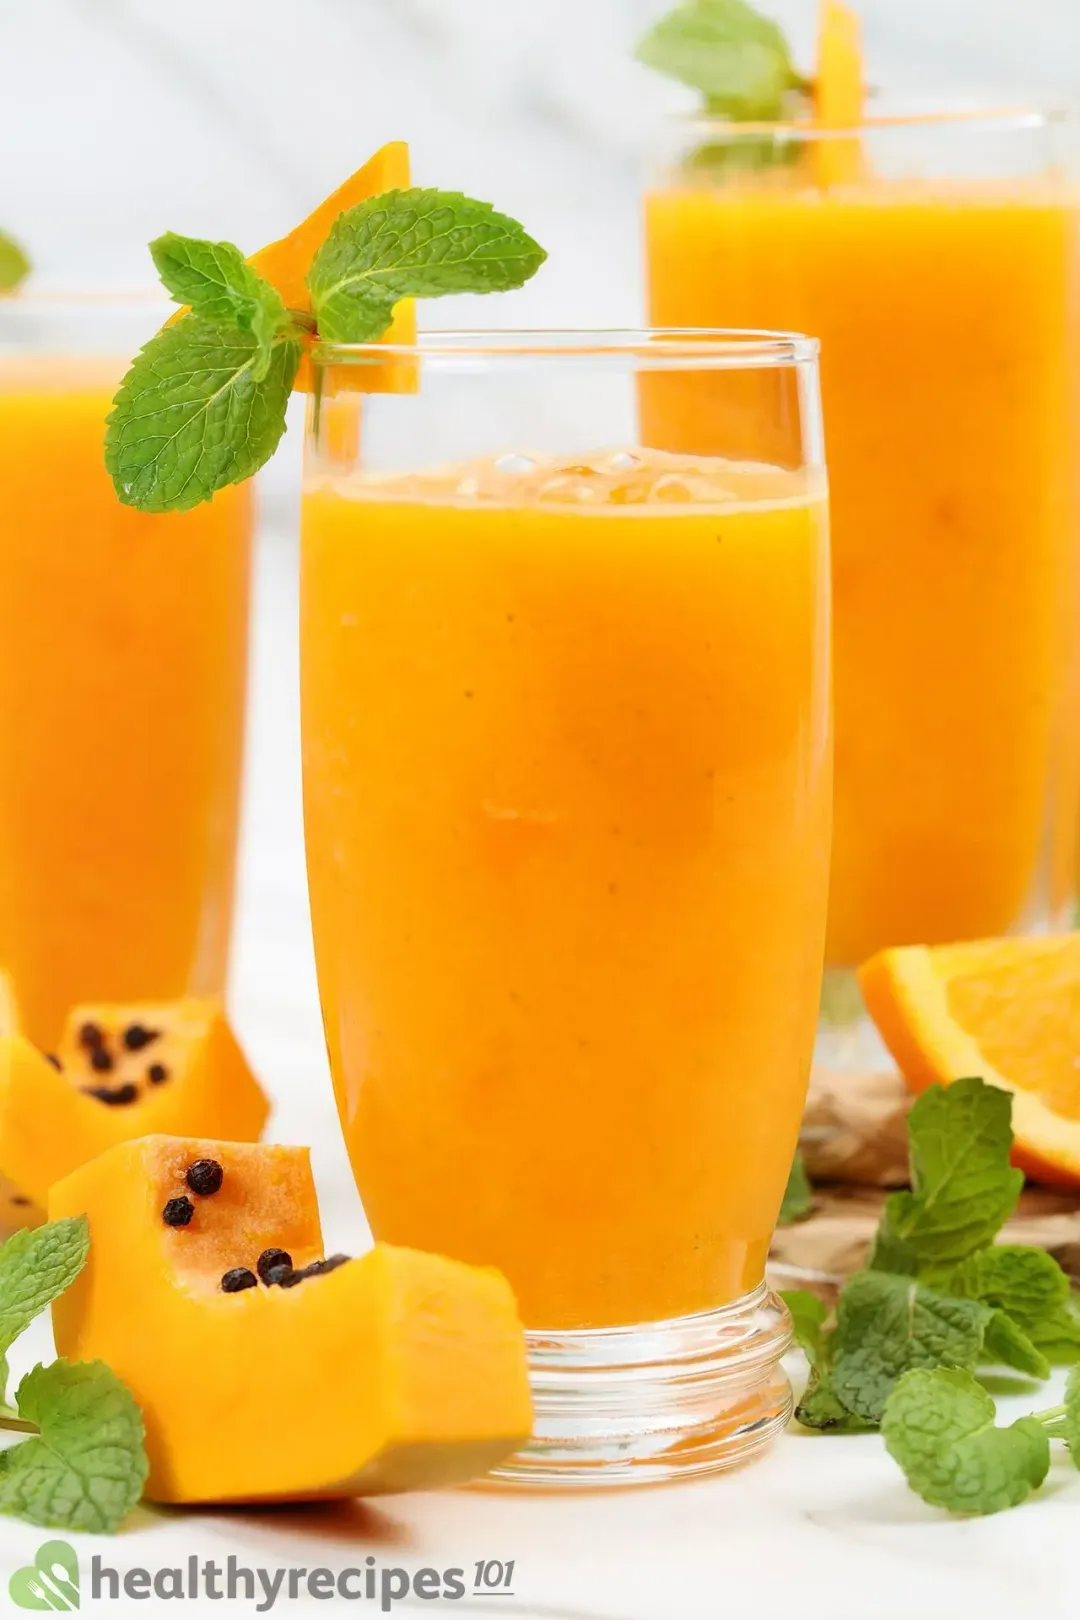 Homemade papaya juice recipe